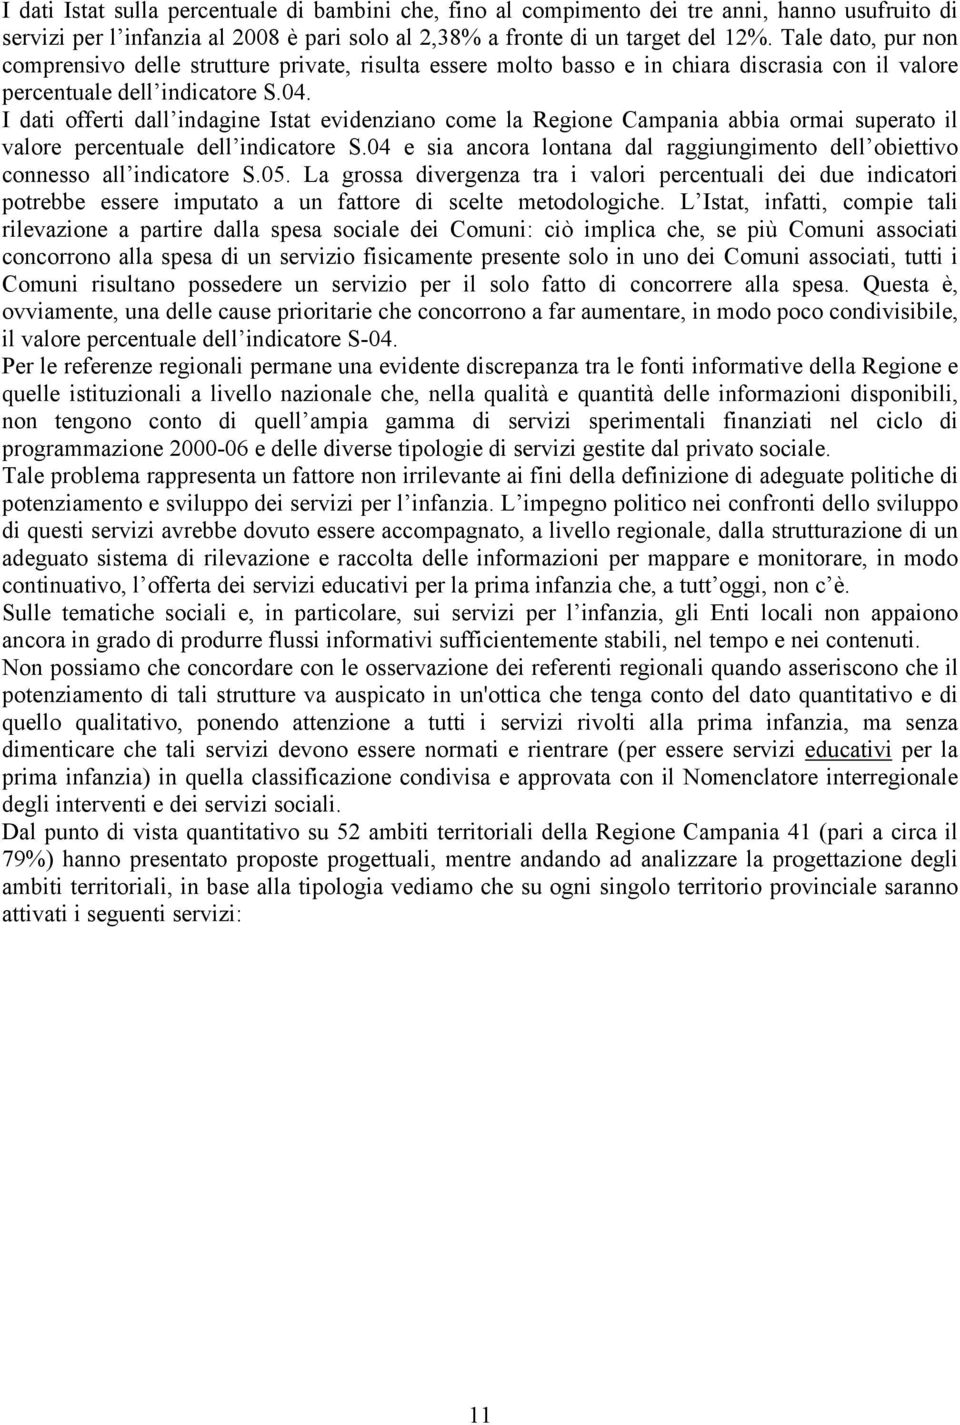 I dati offerti dall indagine Istat evidenziano come la Regione Campania abbia ormai superato il valore percentuale dell indicatore S.